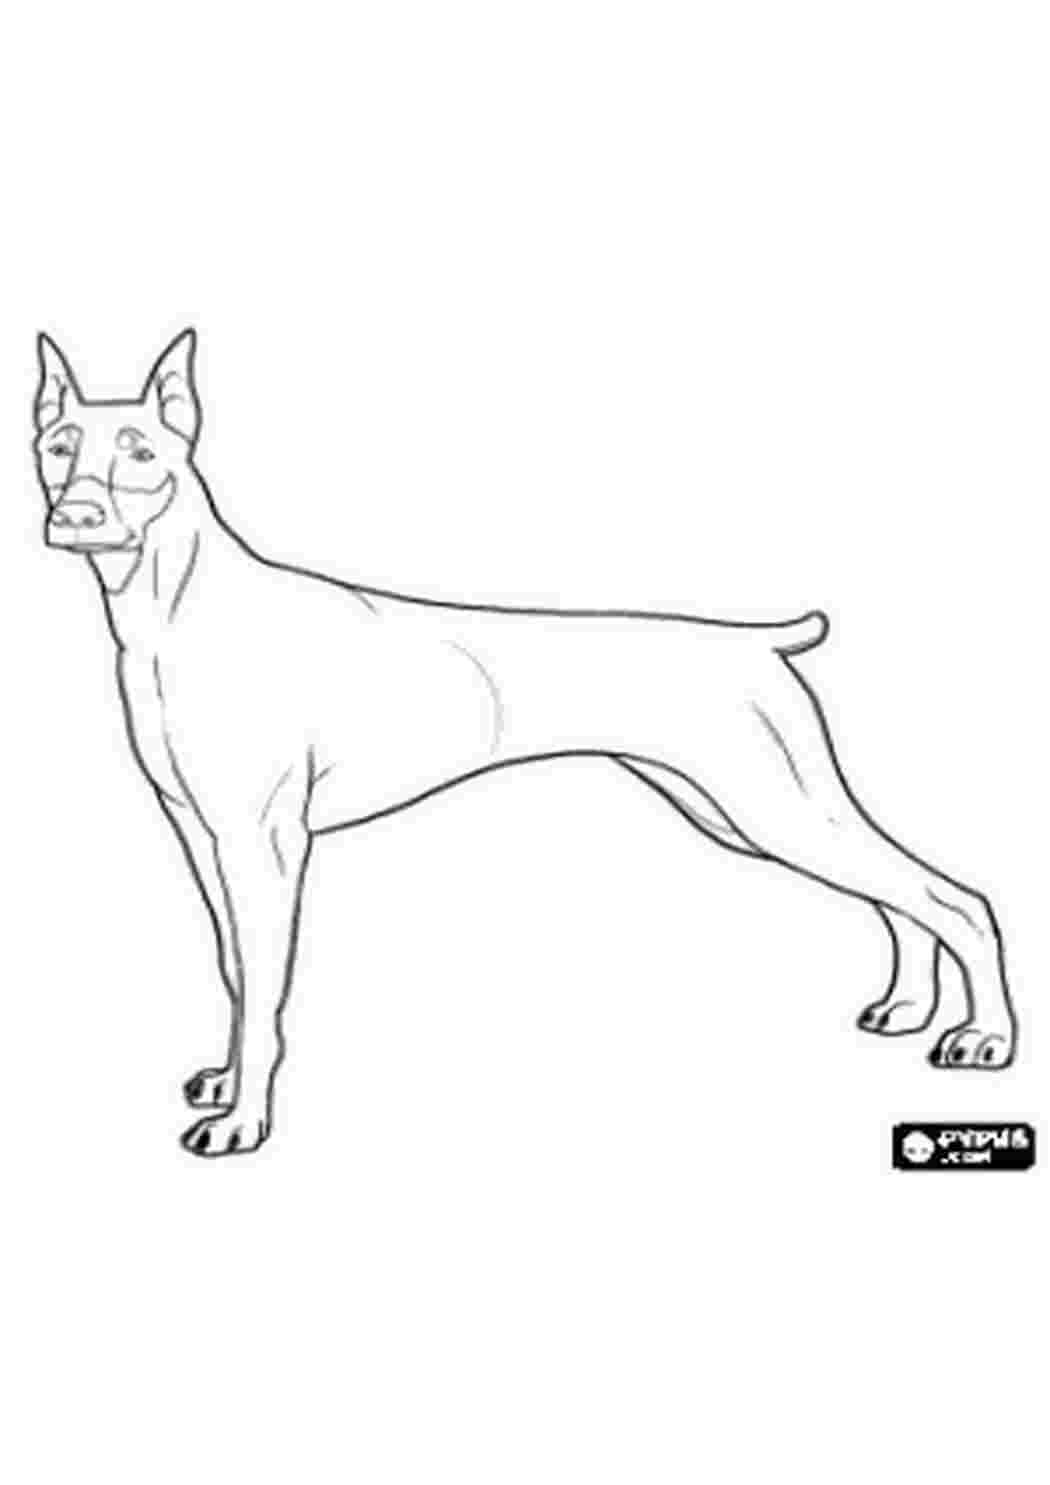 Раскраска Доберман | Раскраски собак, рисунки собак, картинки собак